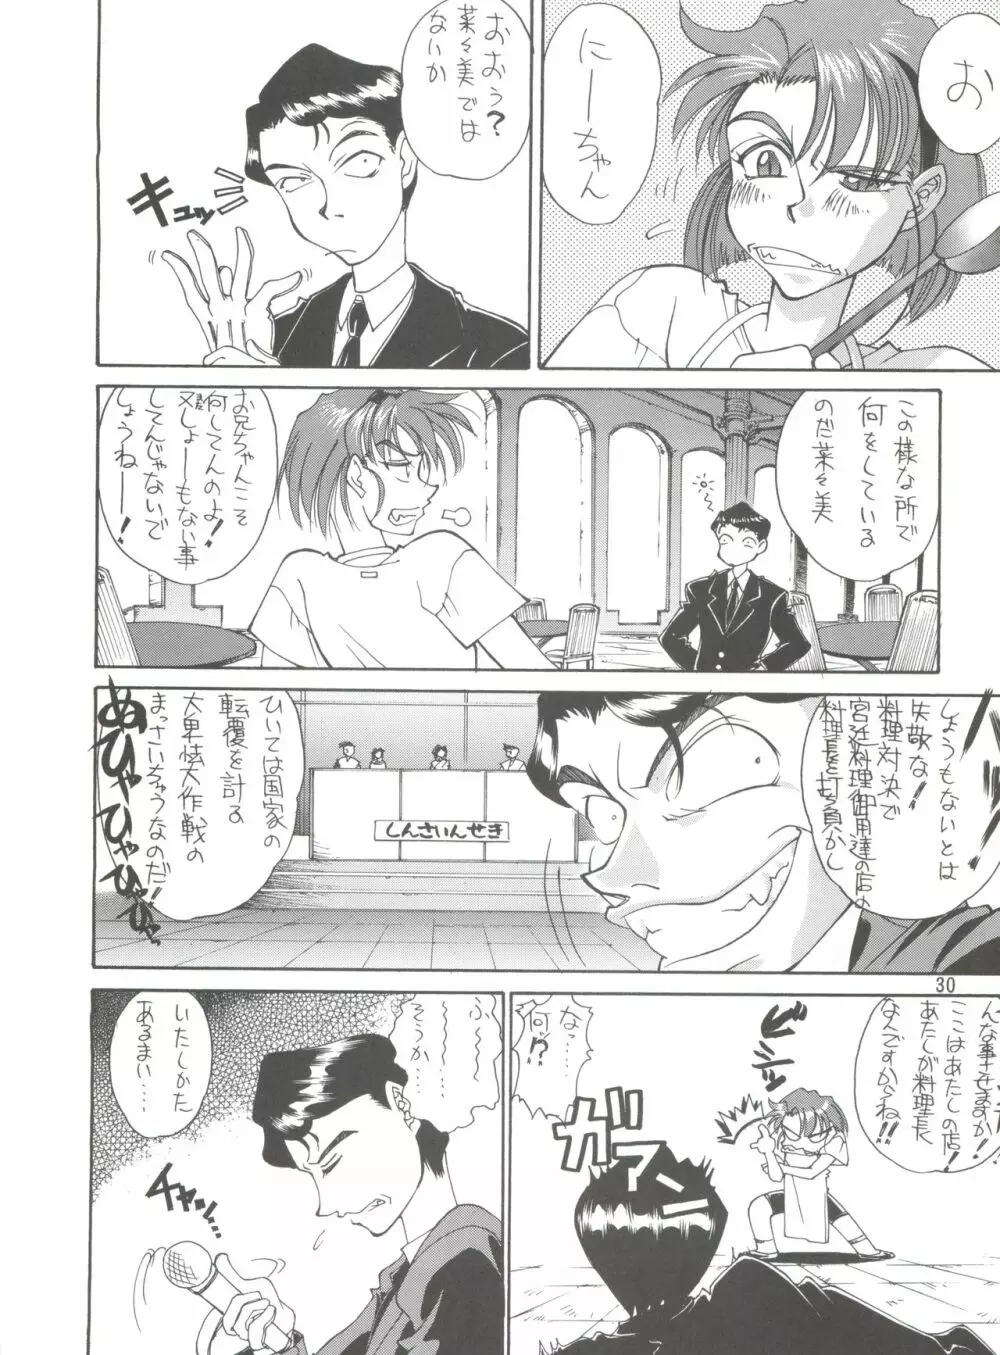 KAISHAKU 2010 29ページ